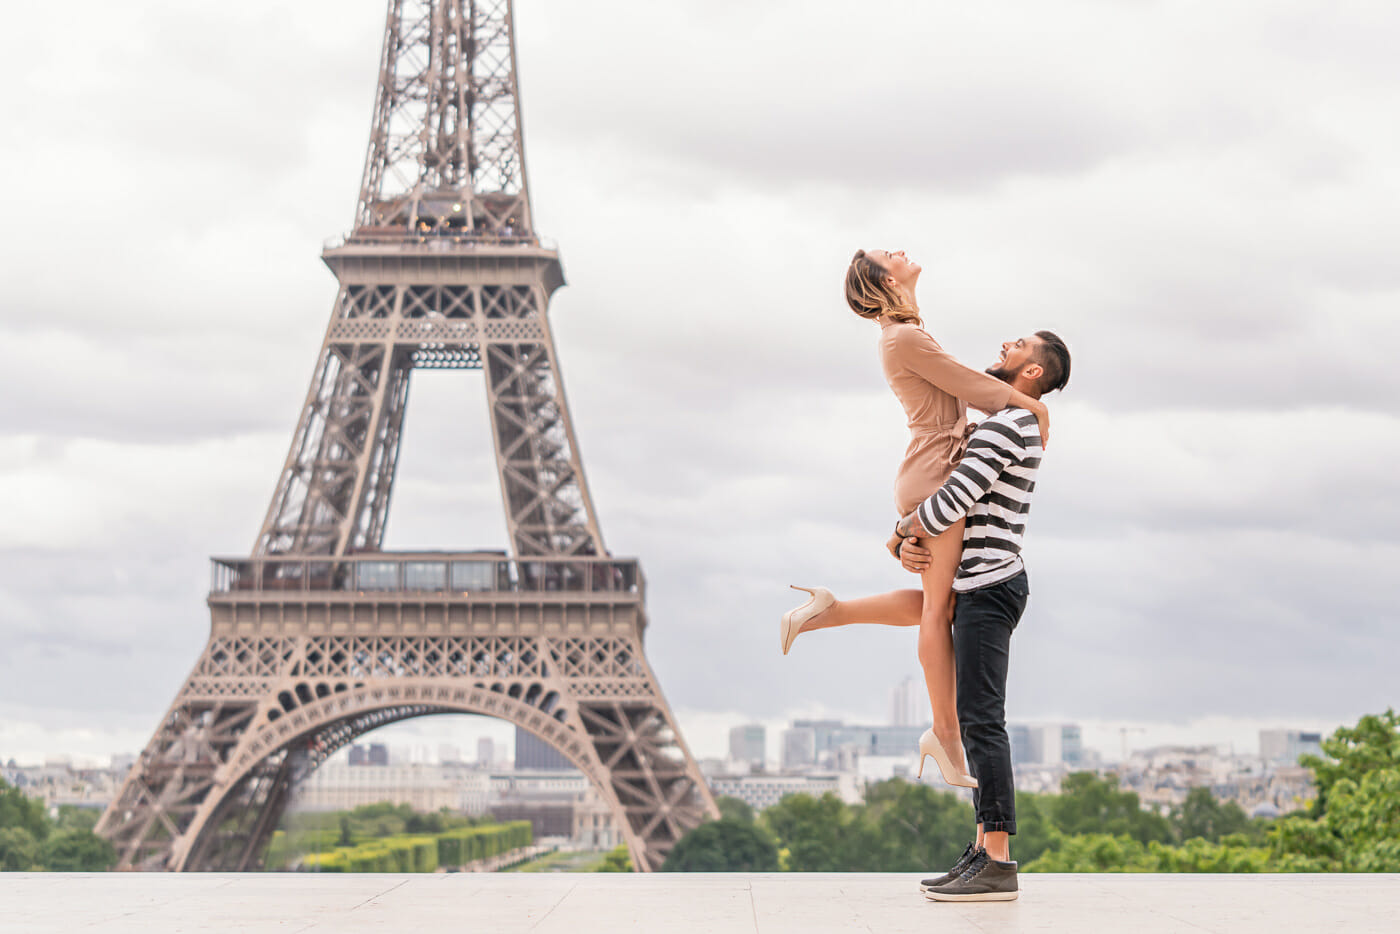 How do do a lift for couple photos in Paris